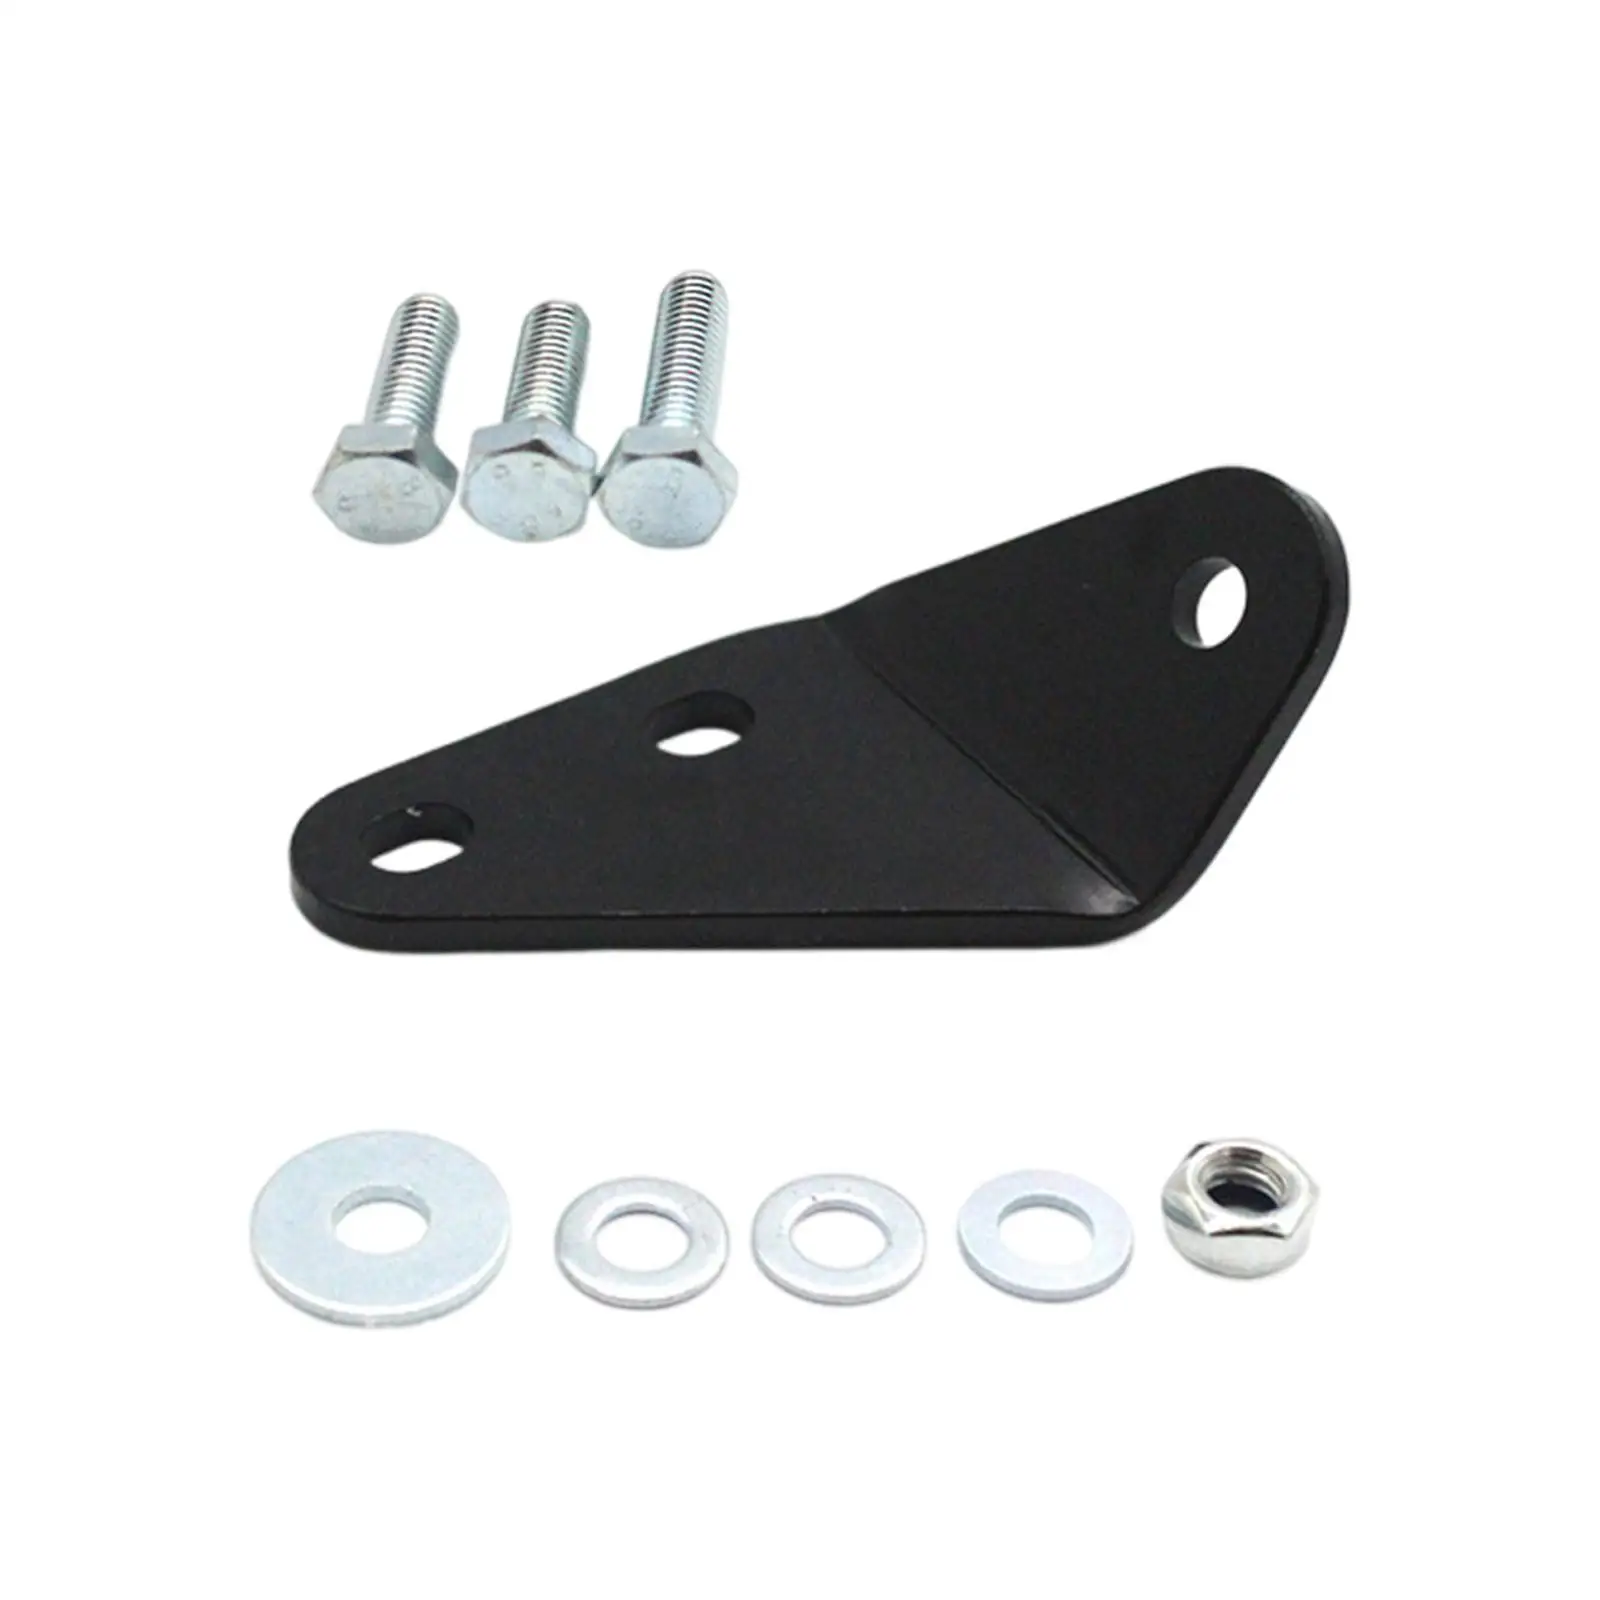 Clutch Pedal Repair Bracket Kit Replacement Parts Durable for VW T4 Transporter Multivan Caravelle Automotive Accessories